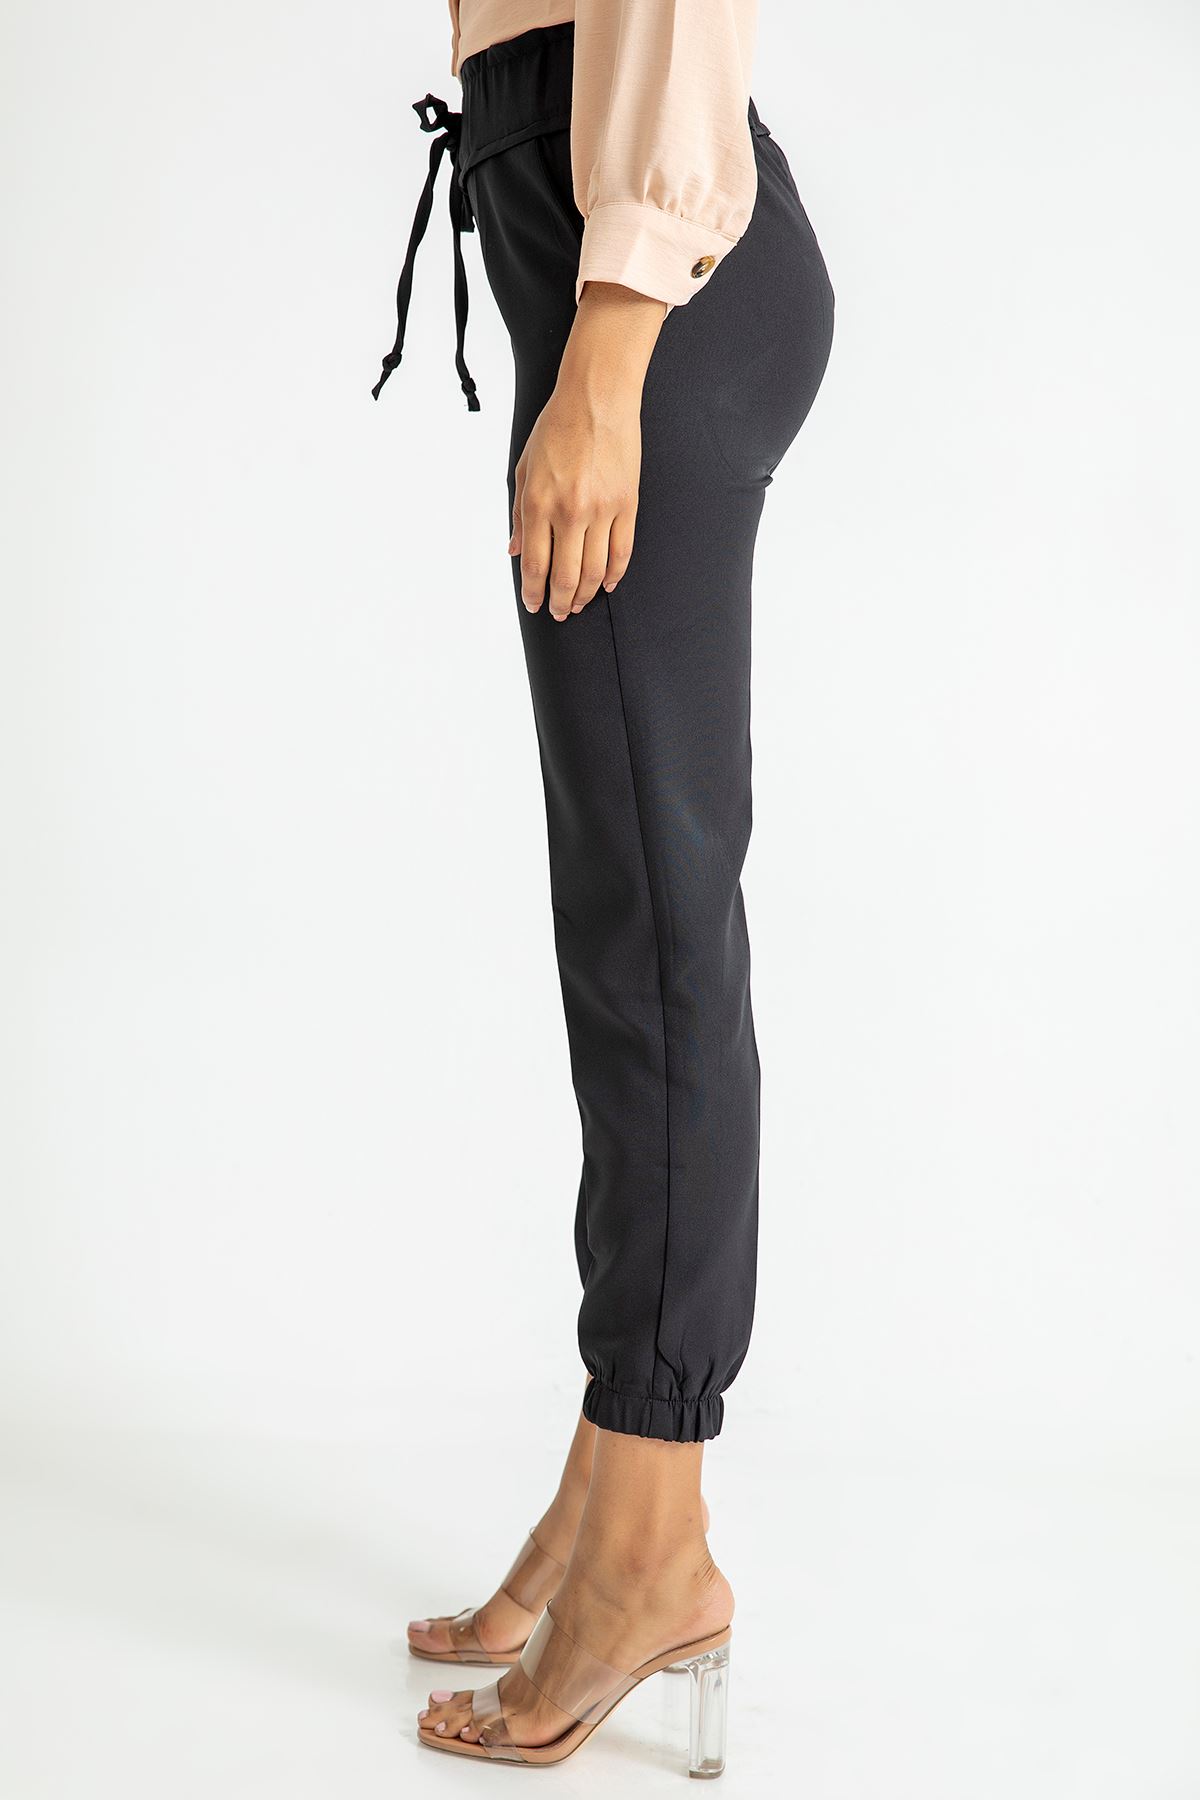 Atlas Fabric Ankle Length Elastic Waist Jogger Women'S Trouser - Black